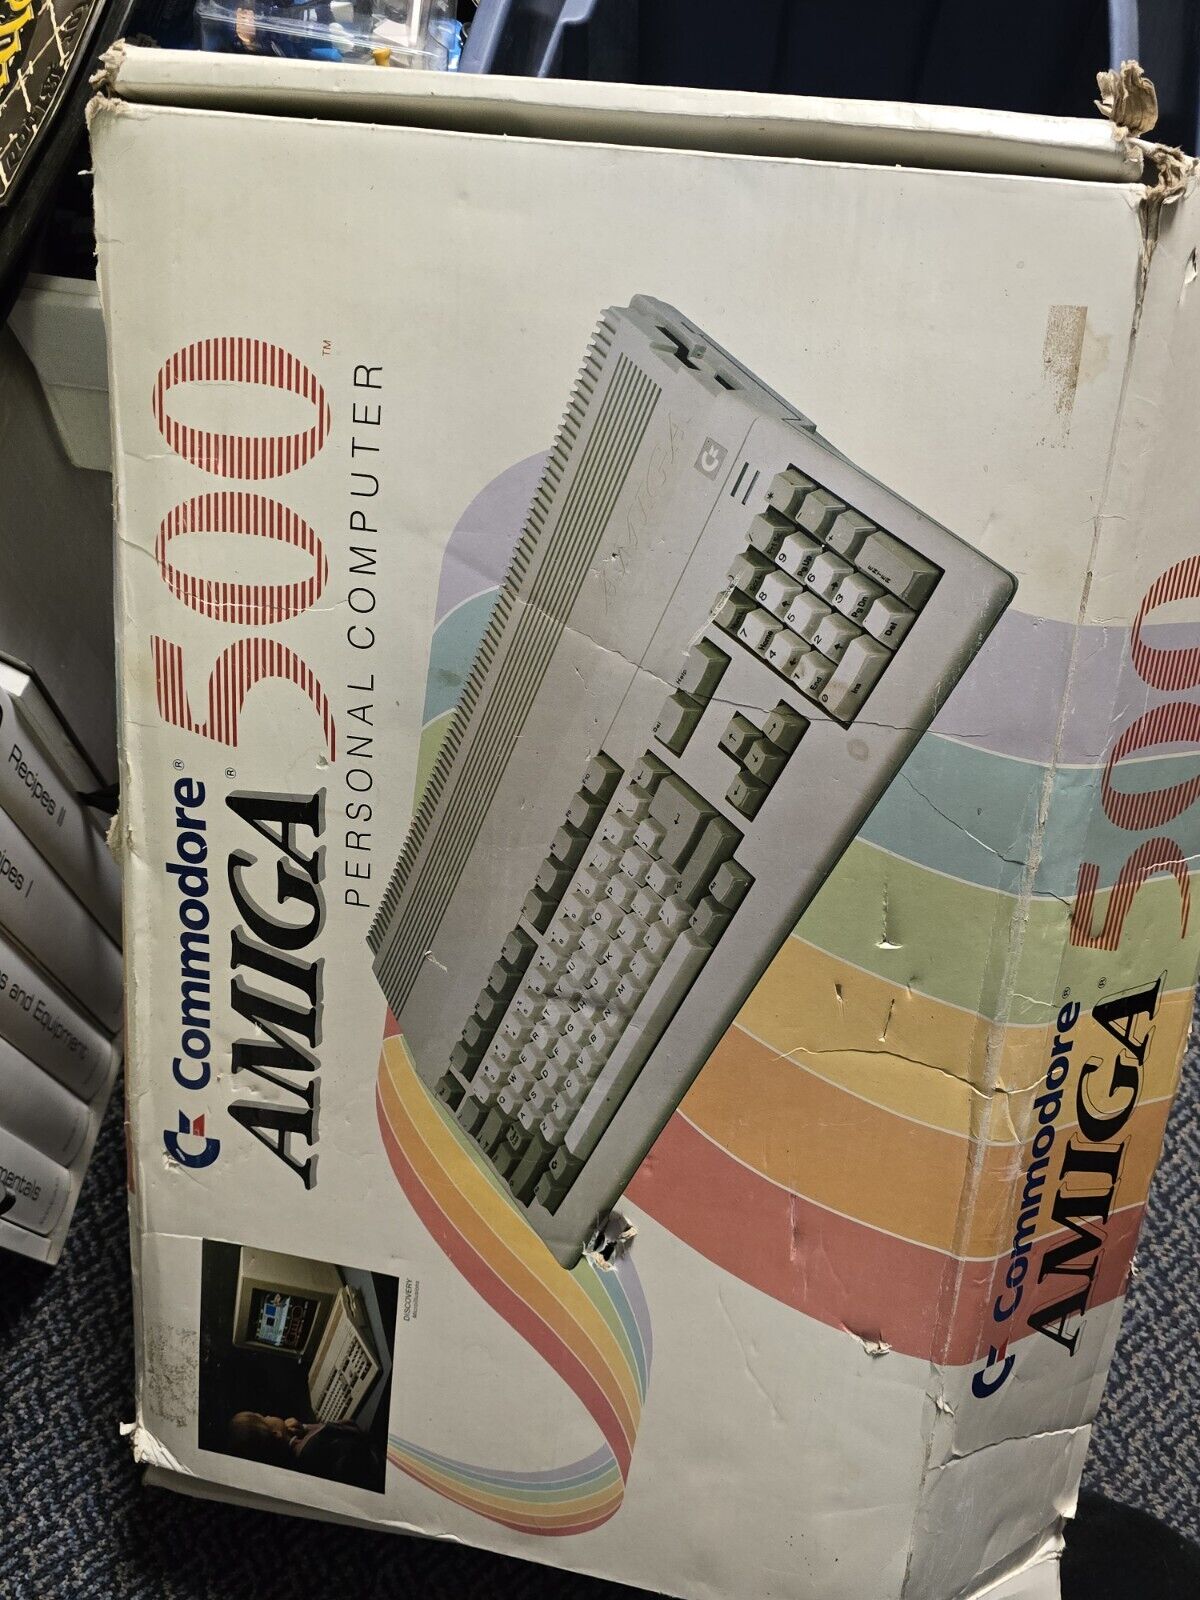 Commodore Amiga 500 Computer